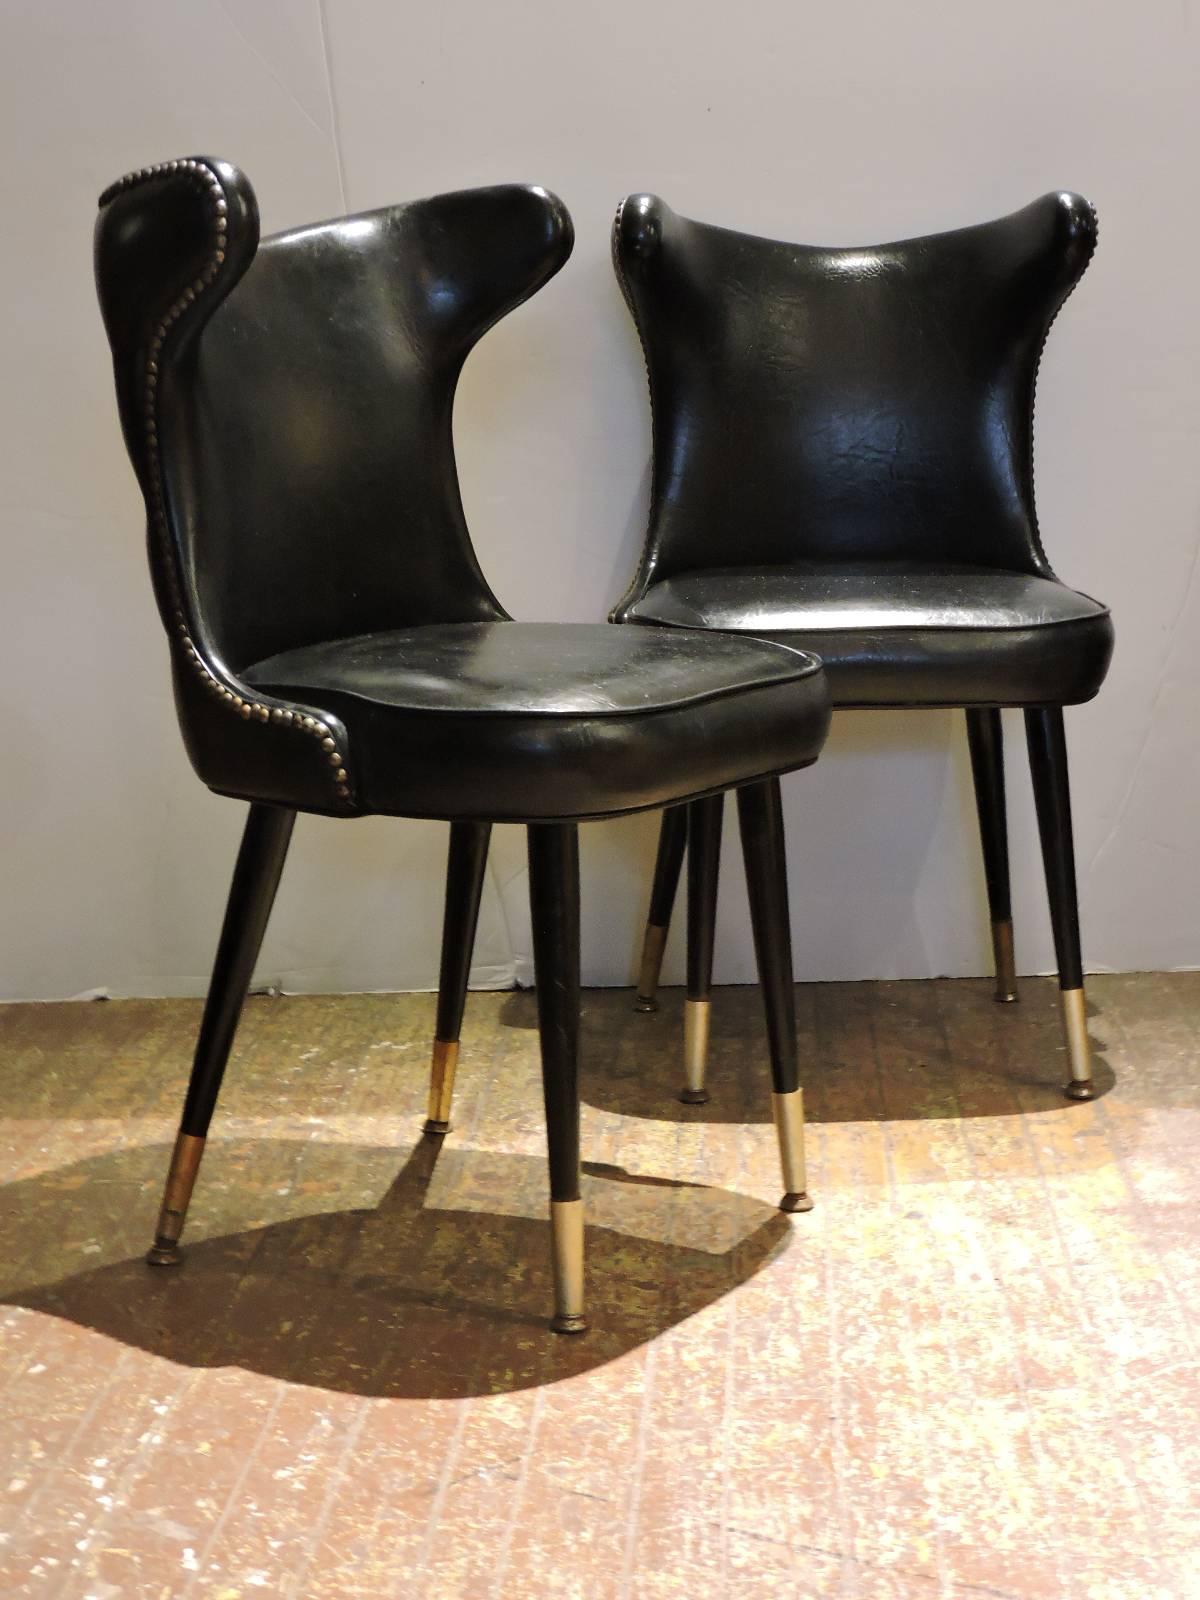 American Sleek Hollywood Regency Chairs